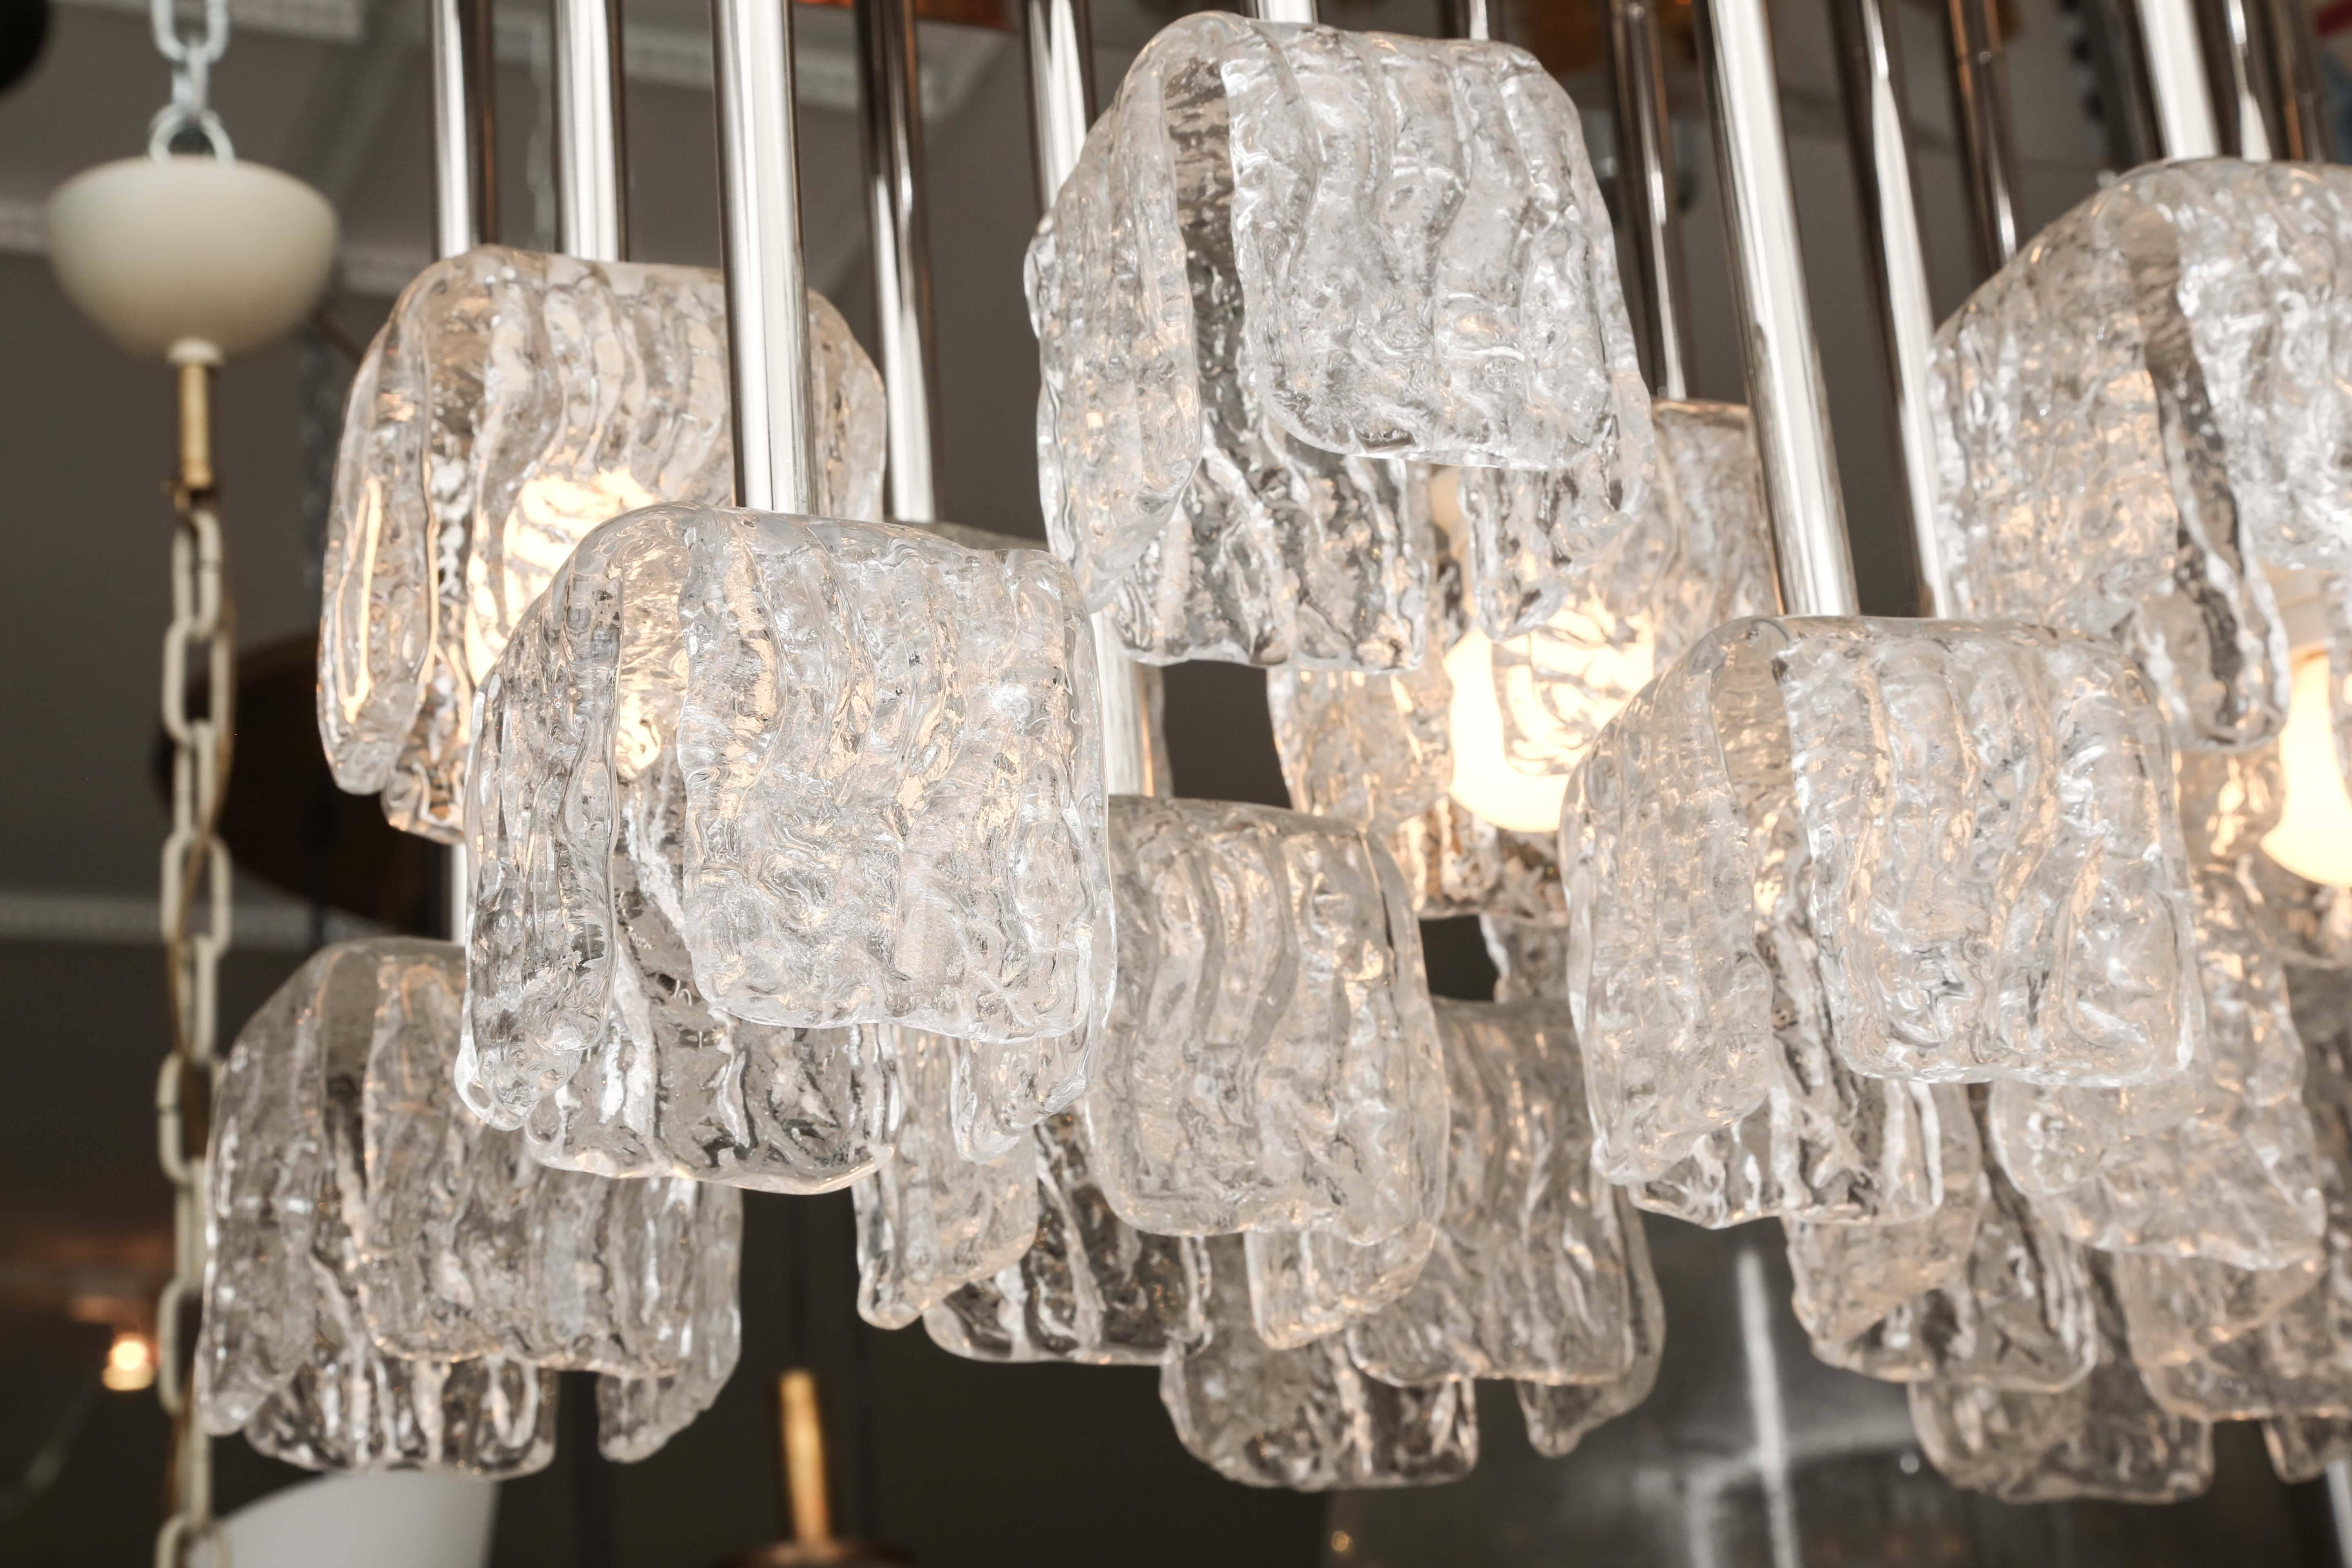 Elegant modernist flush-mount ceiling light fixture featuring 27 textured glass 